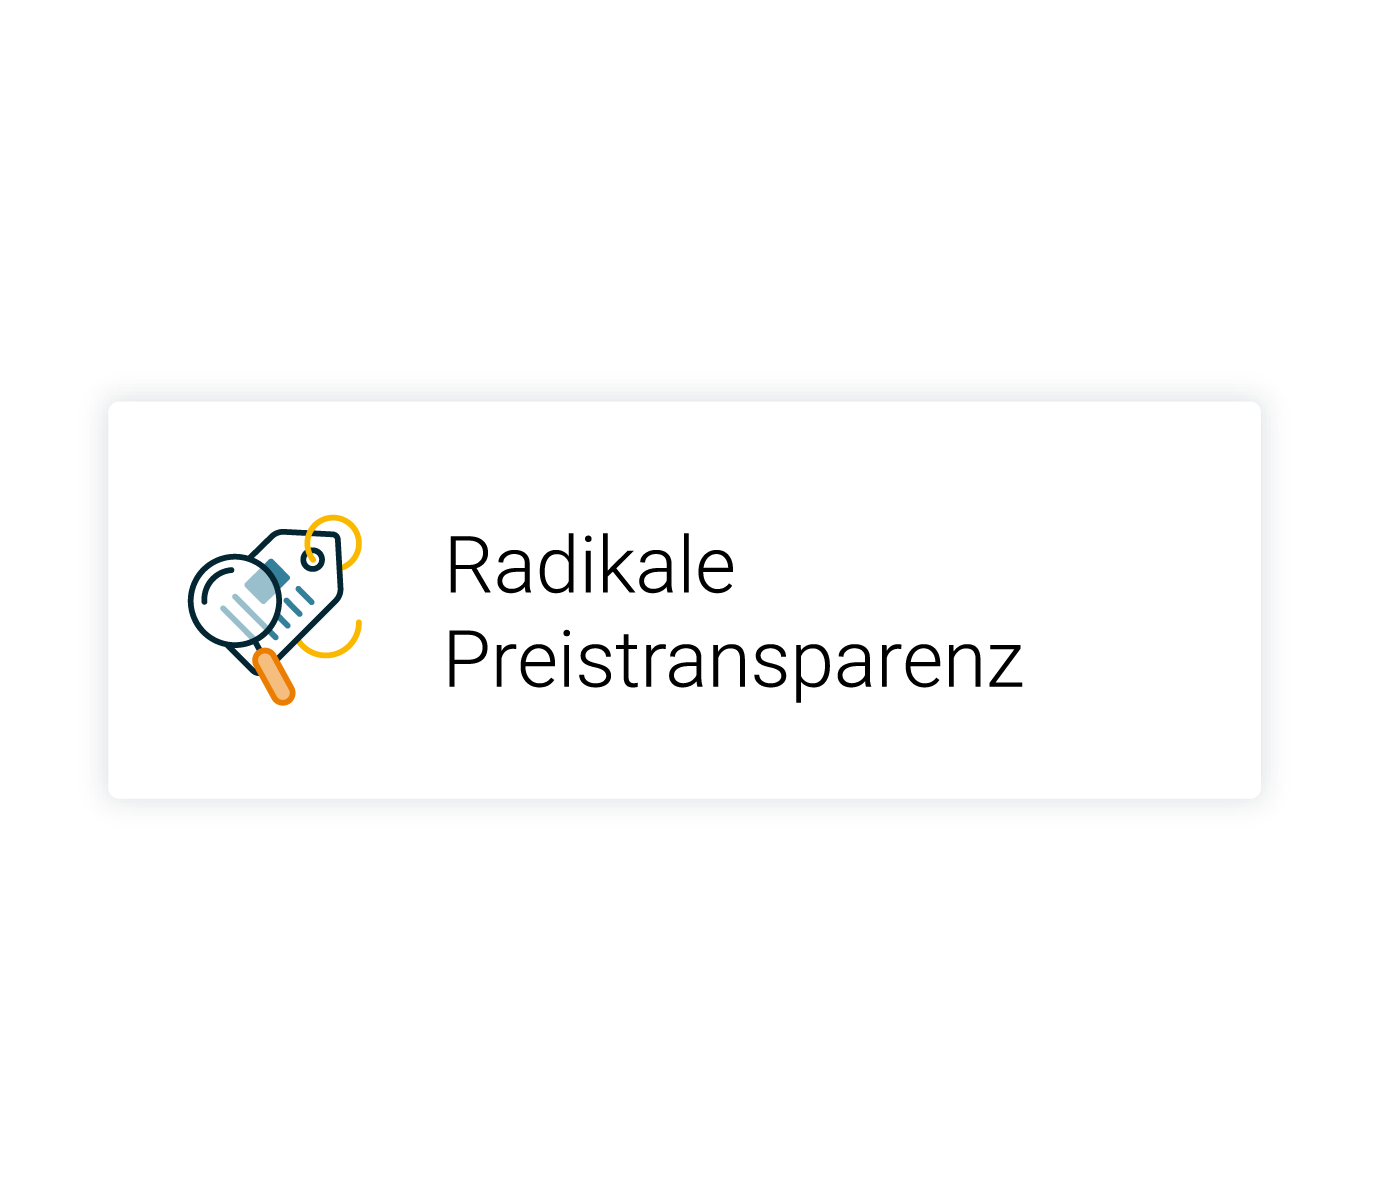 Radikale_Preistransparenz_Rechteck_Format_Text